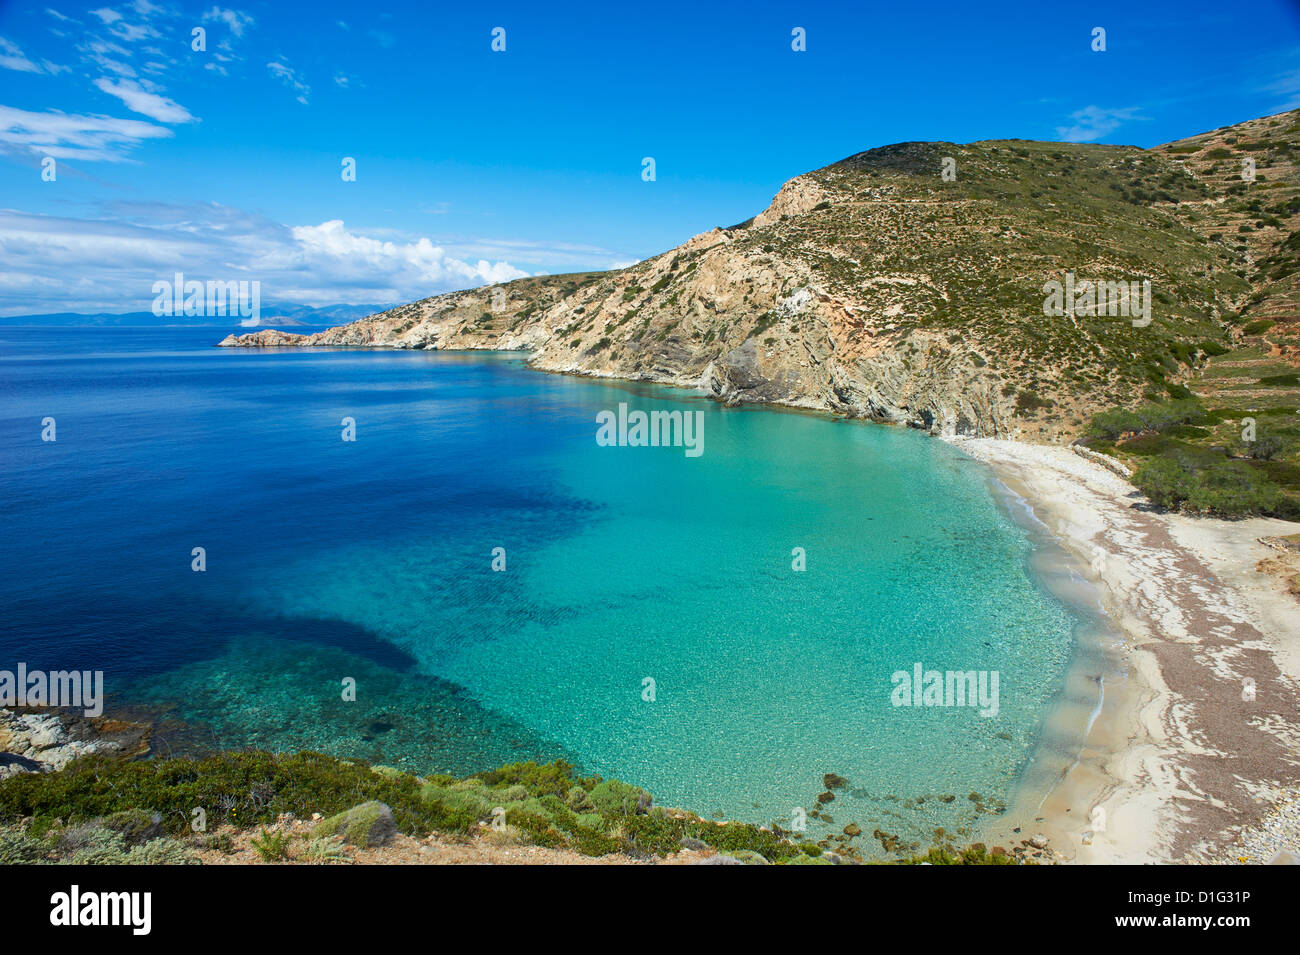 Plage de Livadi, Donoussa, Cyclades, Mer Égée, îles grecques, Grèce, Europe Banque D'Images